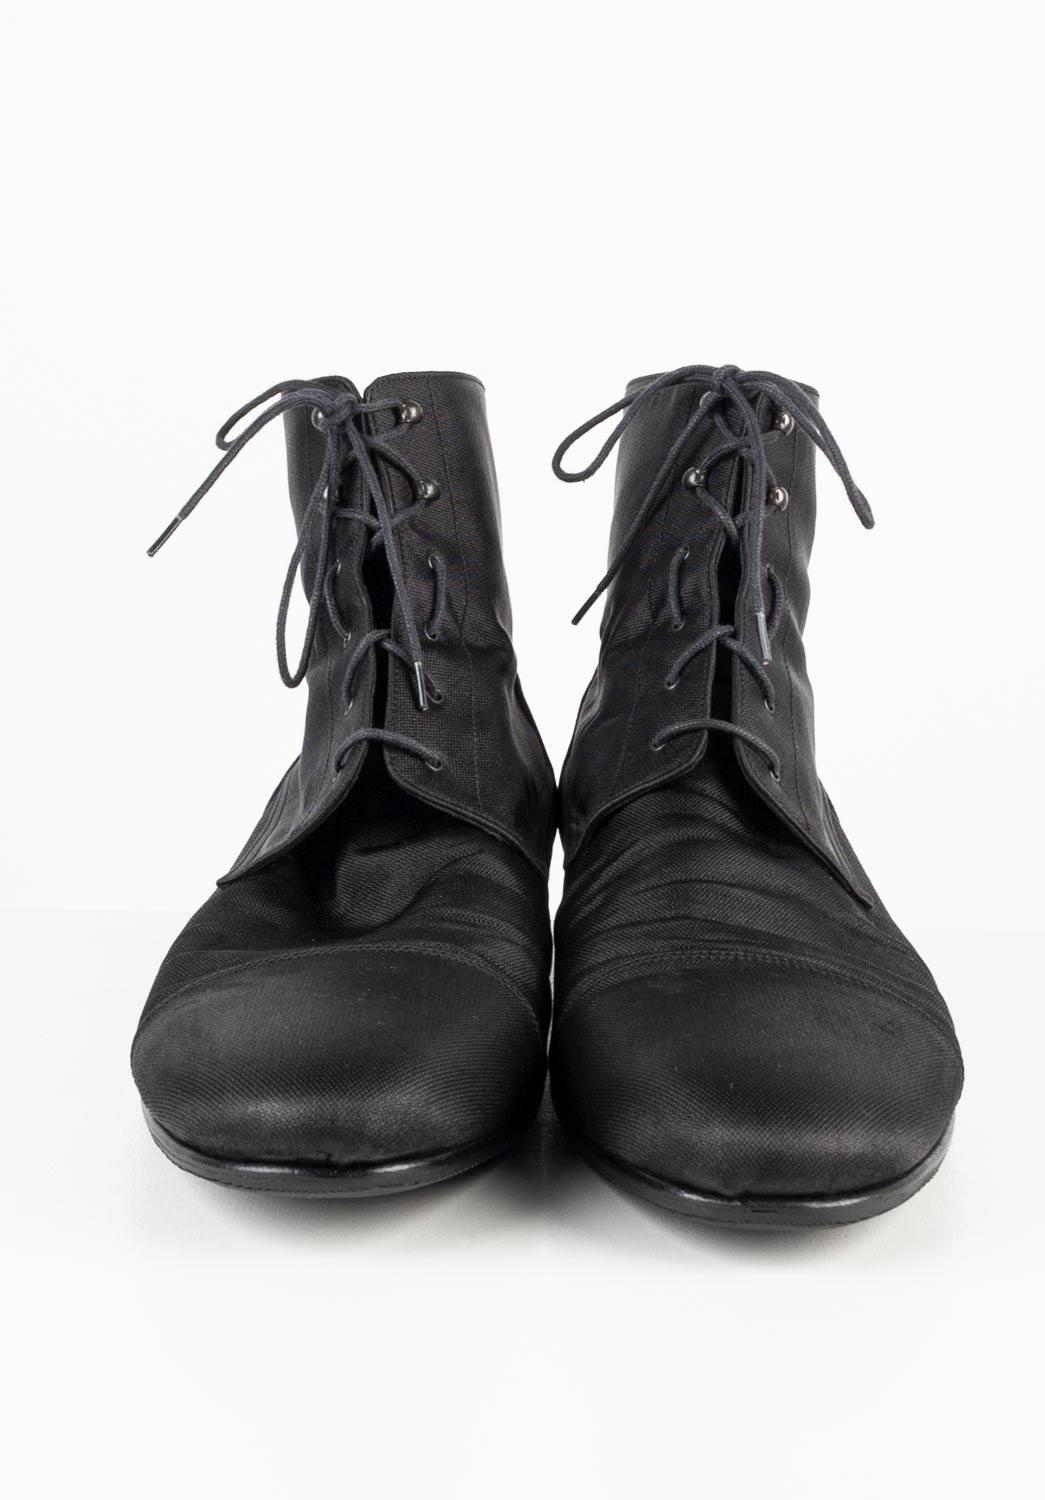 100% authentique Louis Vuitton Military Shoes, S667 
Couleur : noir
(La couleur réelle peut varier légèrement en raison de l'interprétation individuelle de l'écran de l'ordinateur).
Matière : 100% nylon
Taille de l'étiquette : UK10, USA11, EUR 44